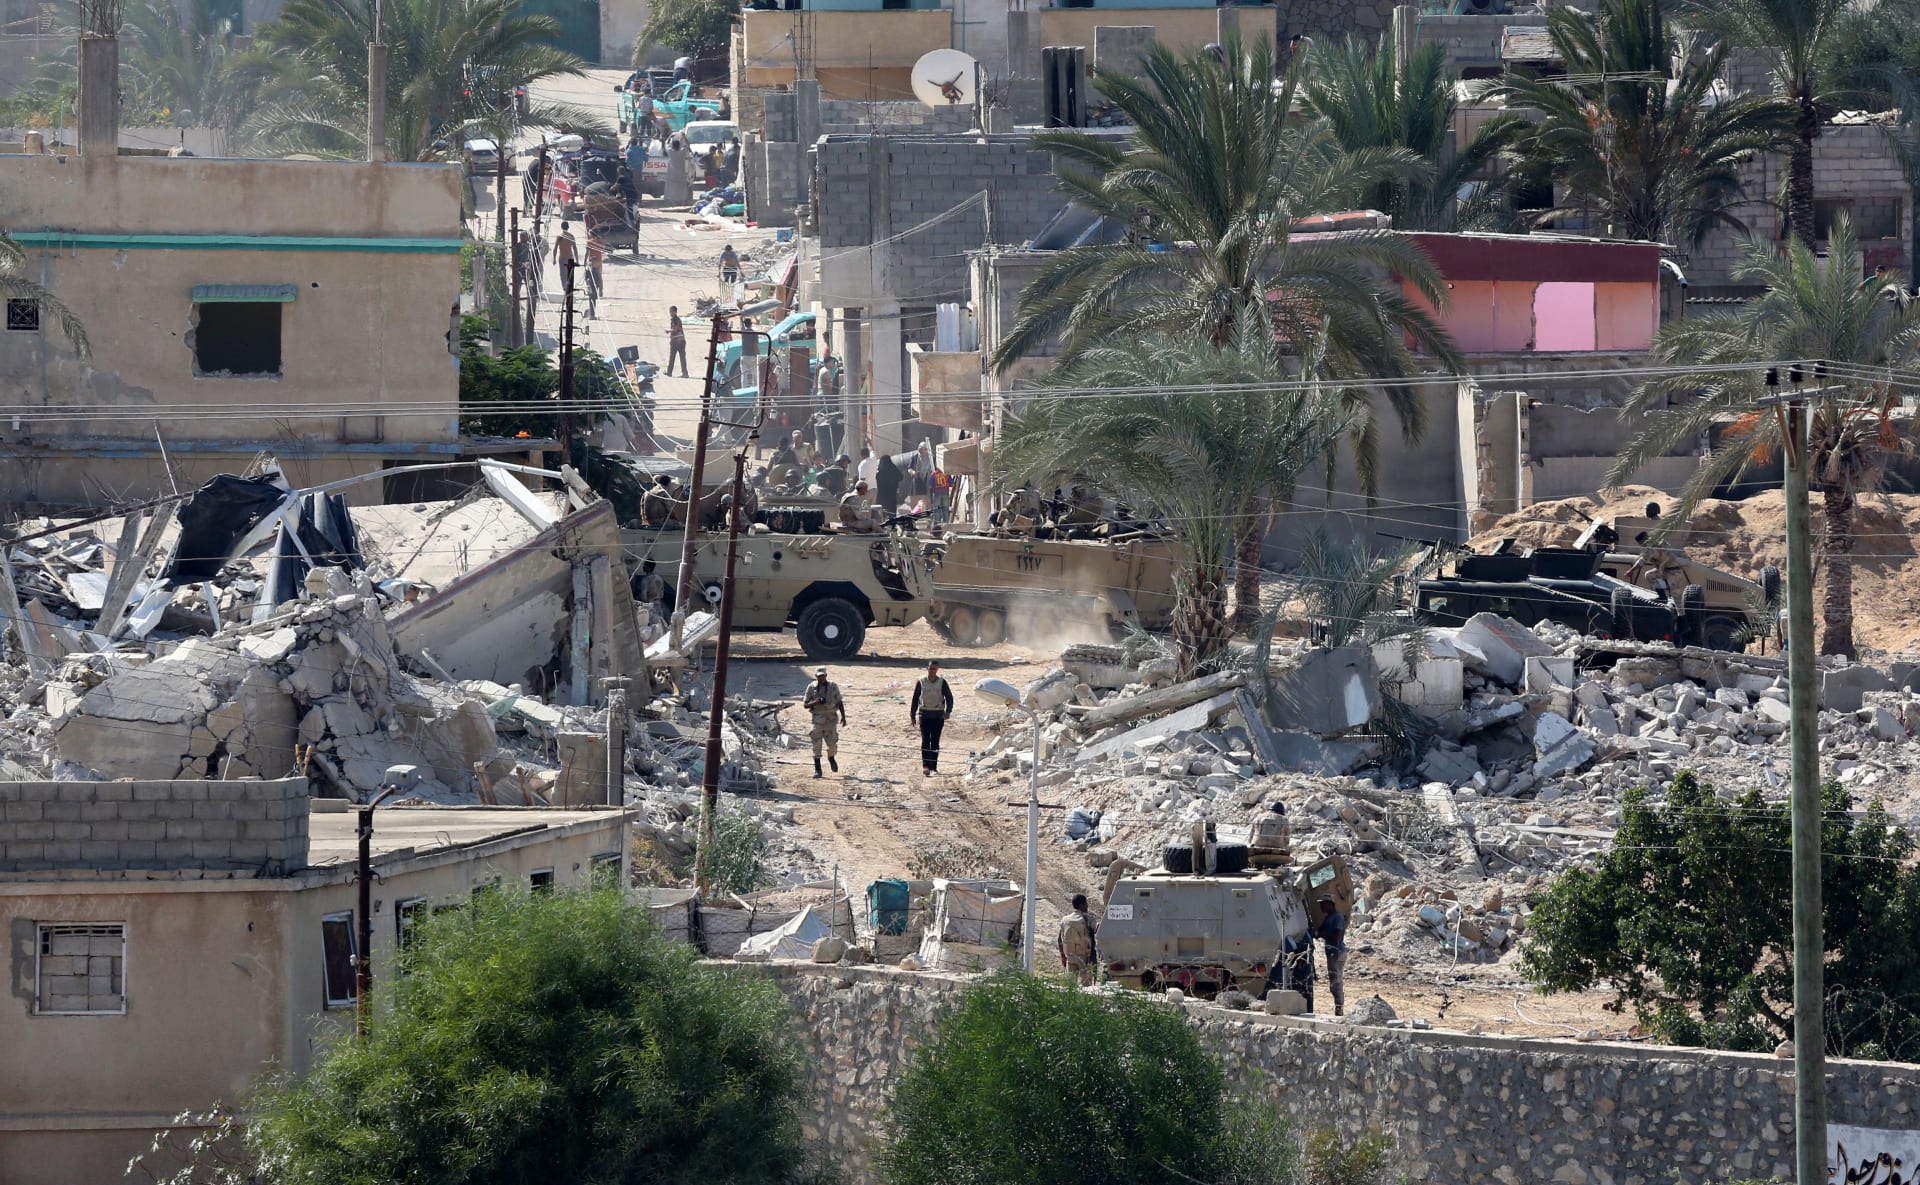 هيومن رايتس ووتش: عمليات الجيش المصري في سيناء لهدم المنازل والإخلاء القسري قد تشكل جرائم حرب